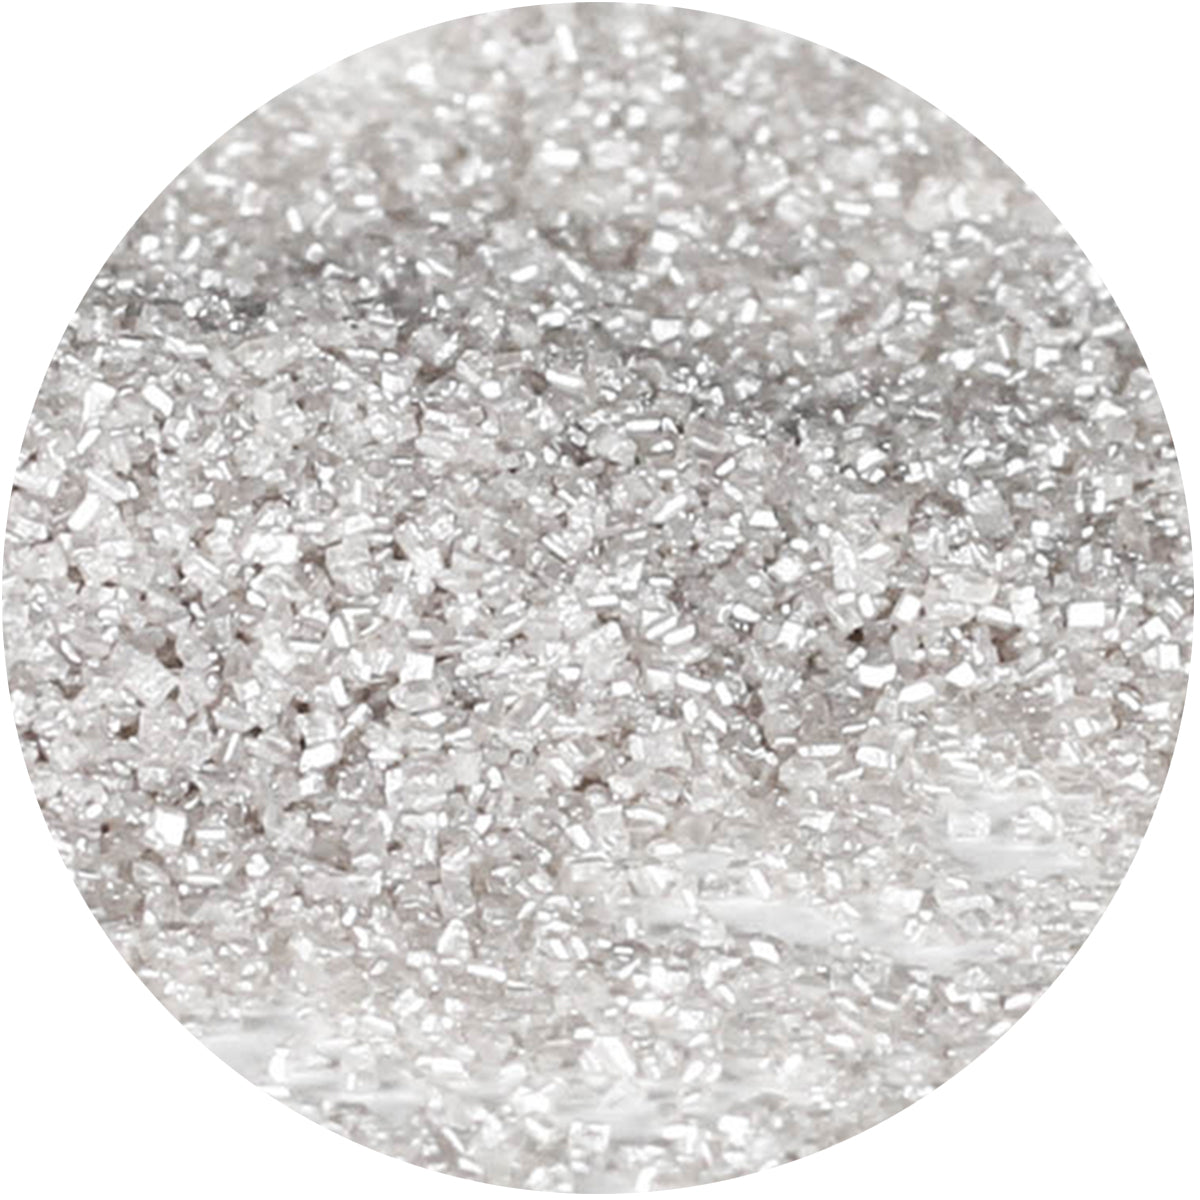 Celebakes Shimmering Silver Sanding Sugar